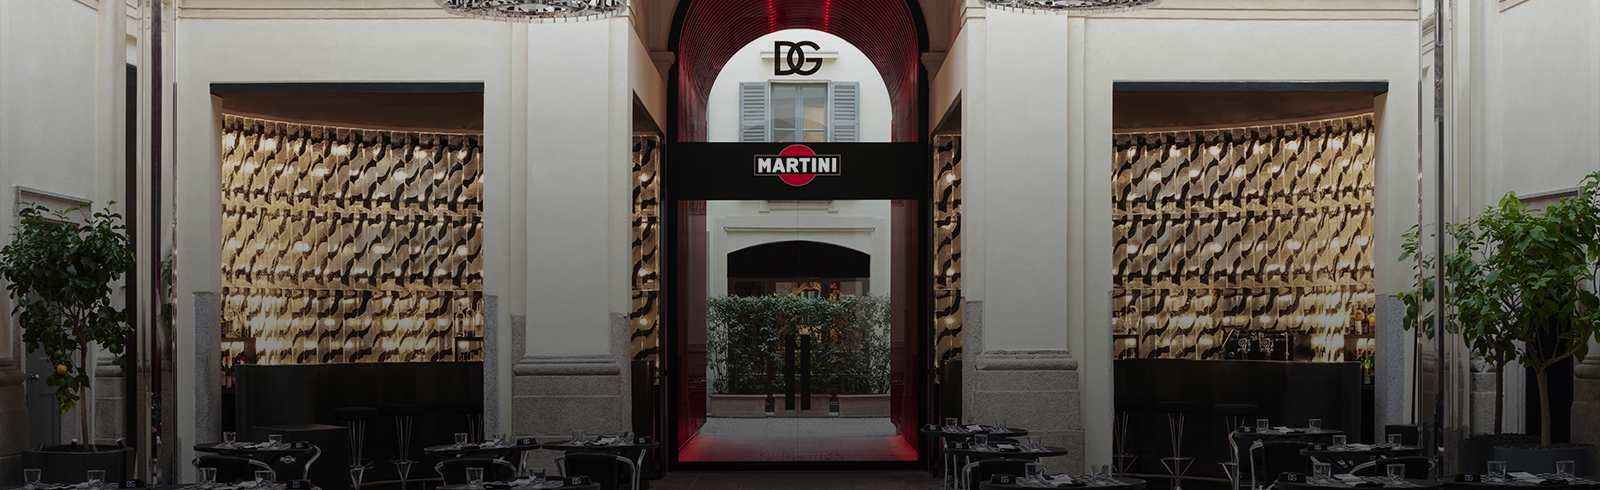 DG MARTINI® | Dolce&Gabbana